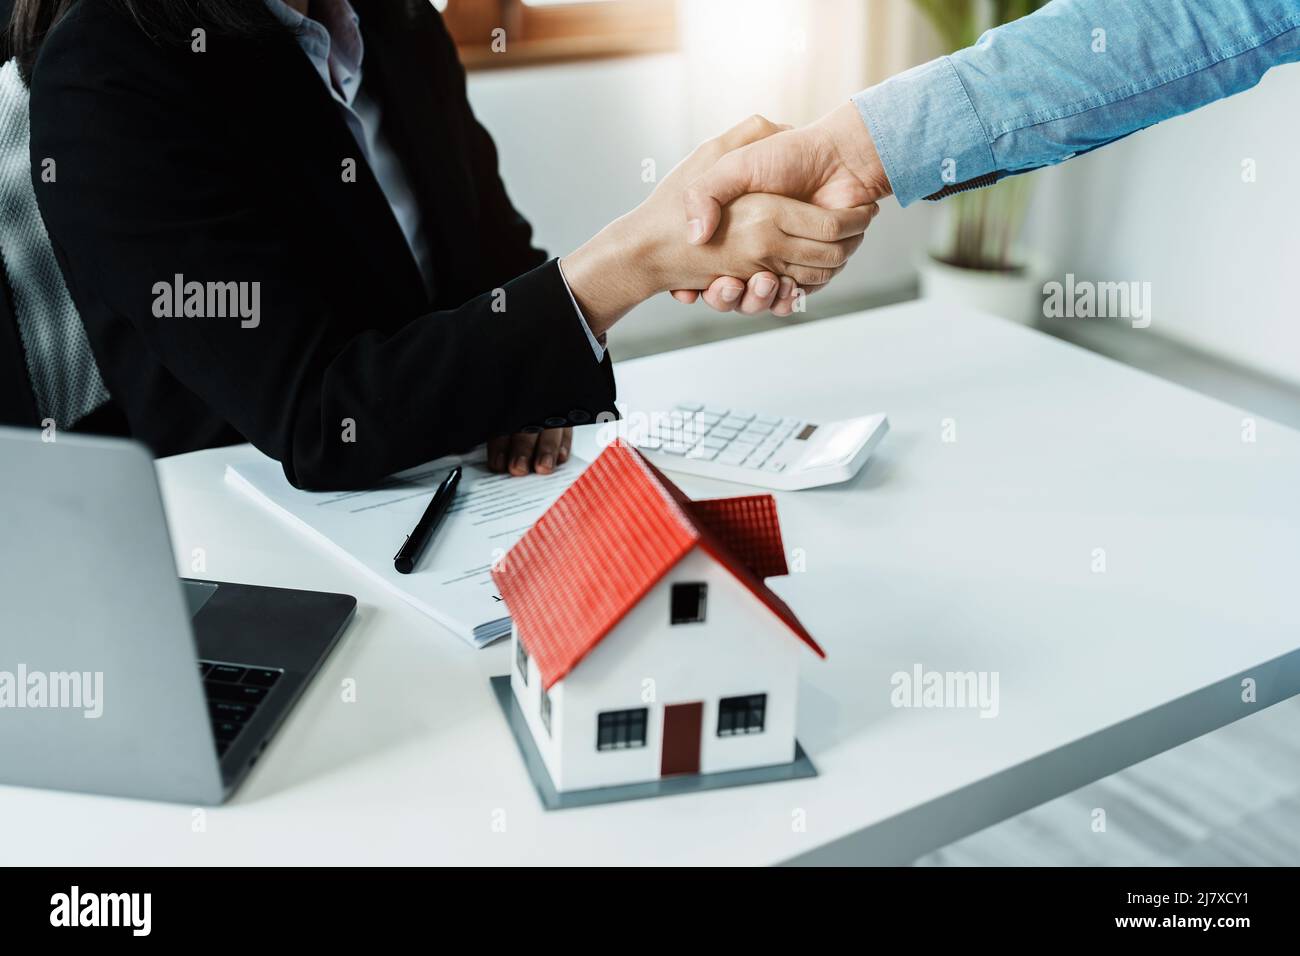 Leggi, contratti, ipoteche, clienti si uniscono agli agenti immobiliari congratulandosi con gli agenti immobiliari per gli accordi di acquisto di immobili e case con Foto Stock